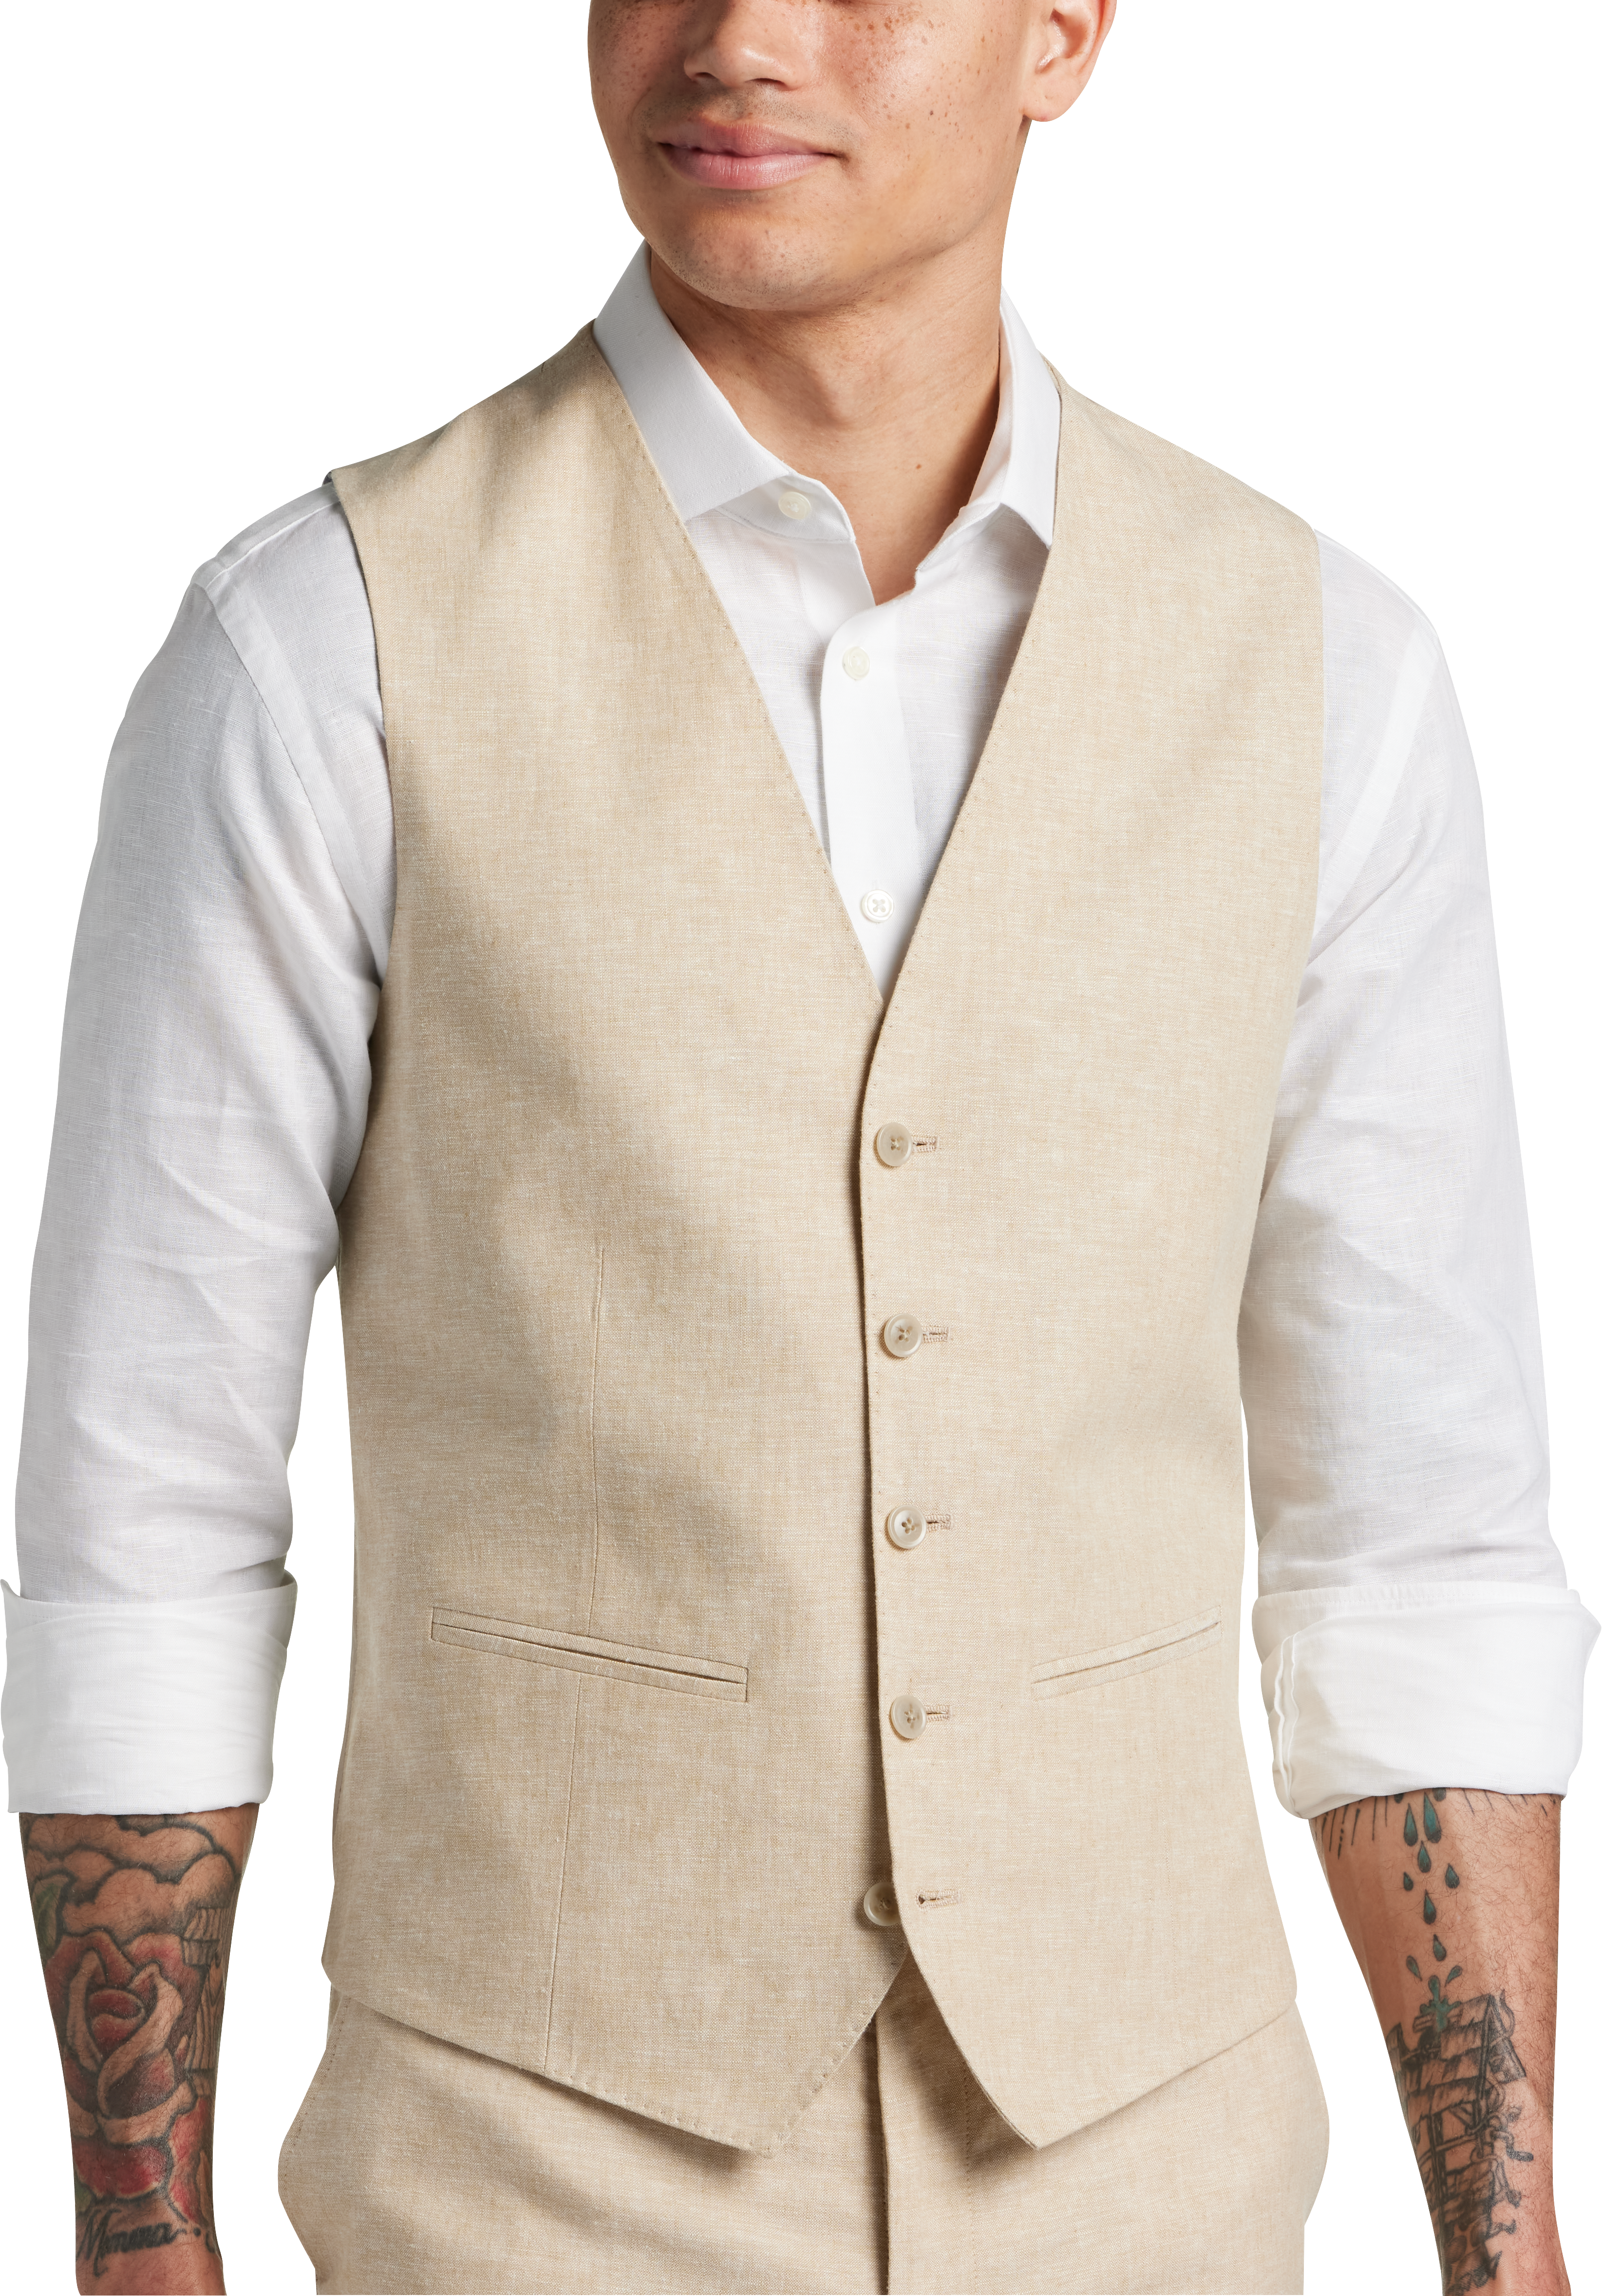 JOE Joseph Abboud Slim Fit Linen Blend Suit Separates Vest, Tan ...